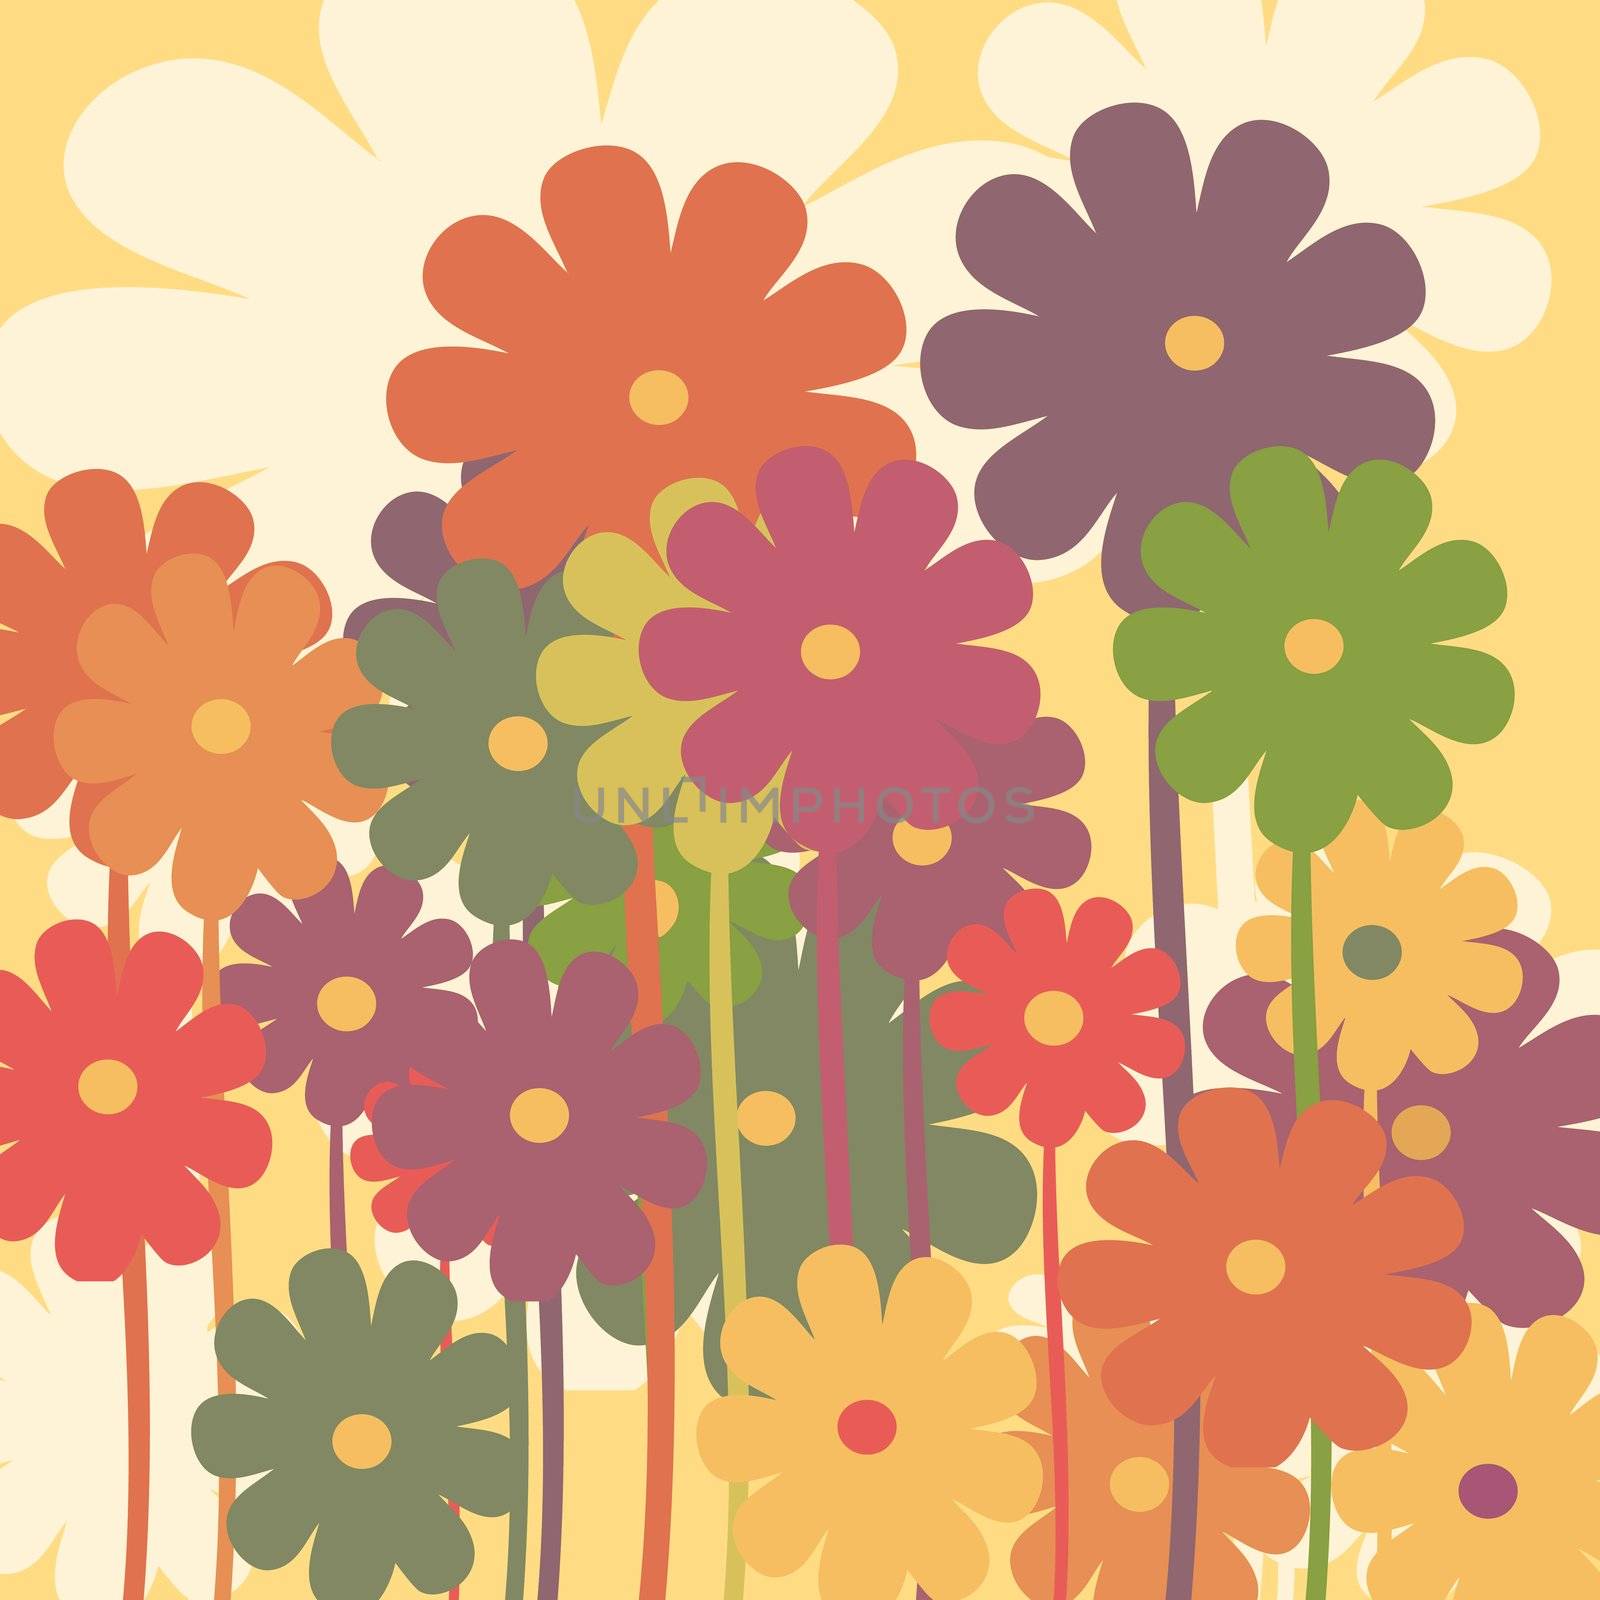 Retro floral background illustration in sepia tones